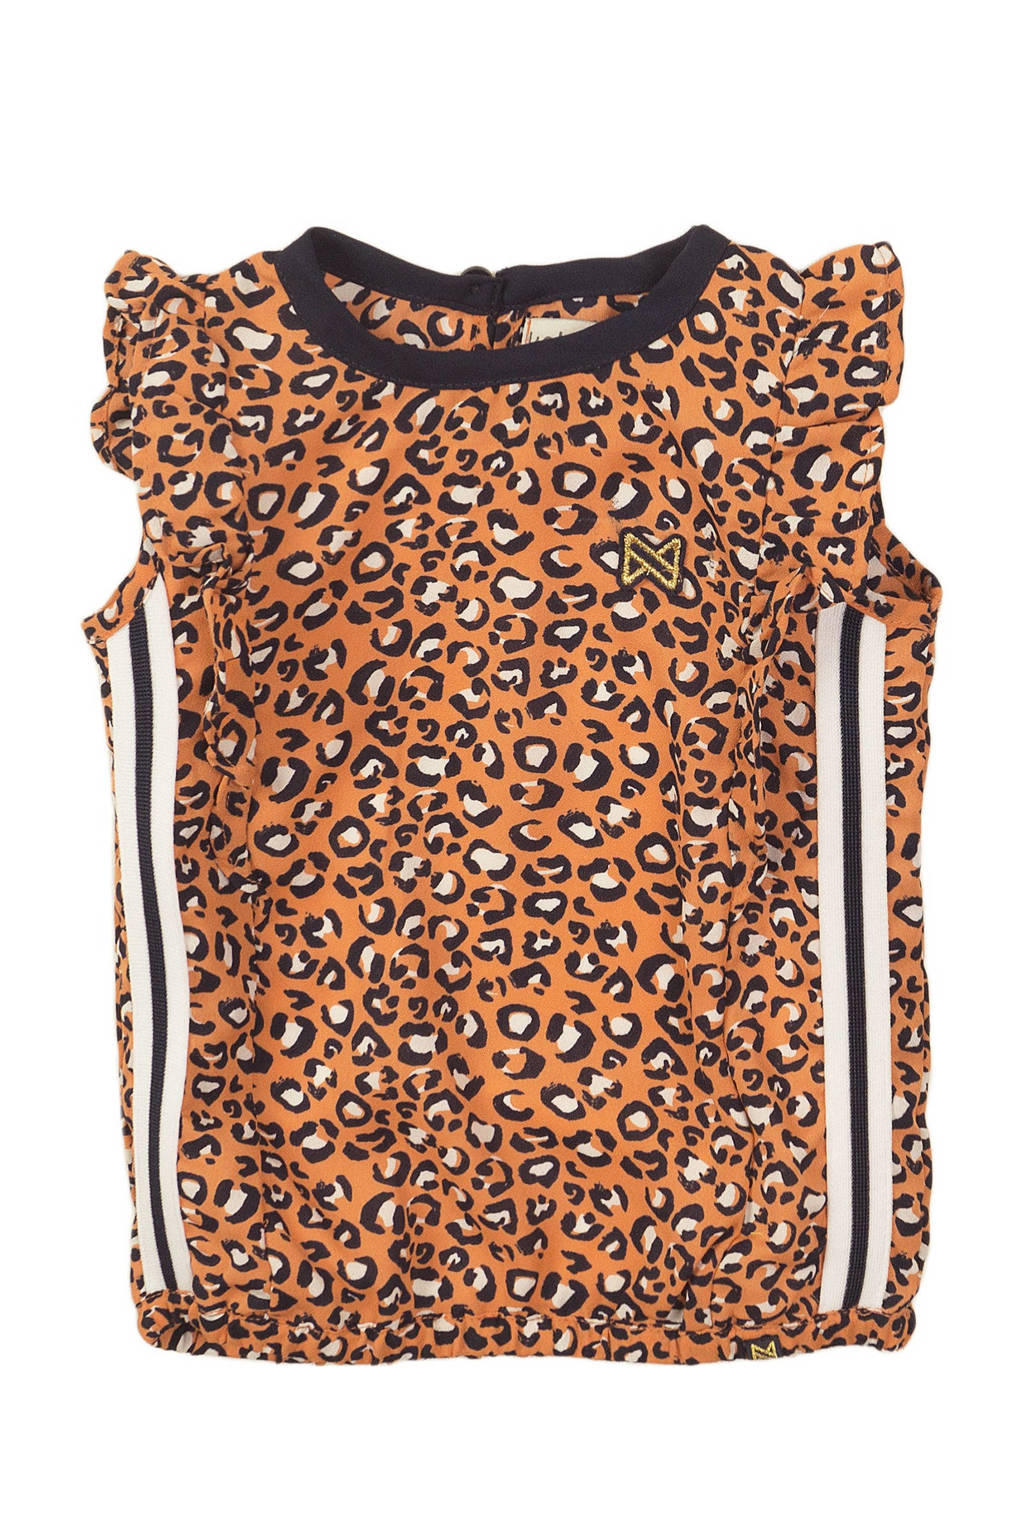 Oranje, zwart en witte meisjes Koko Noko T-shirt en contrastbies van polyester met panterprint, korte mouwen en ronde hals